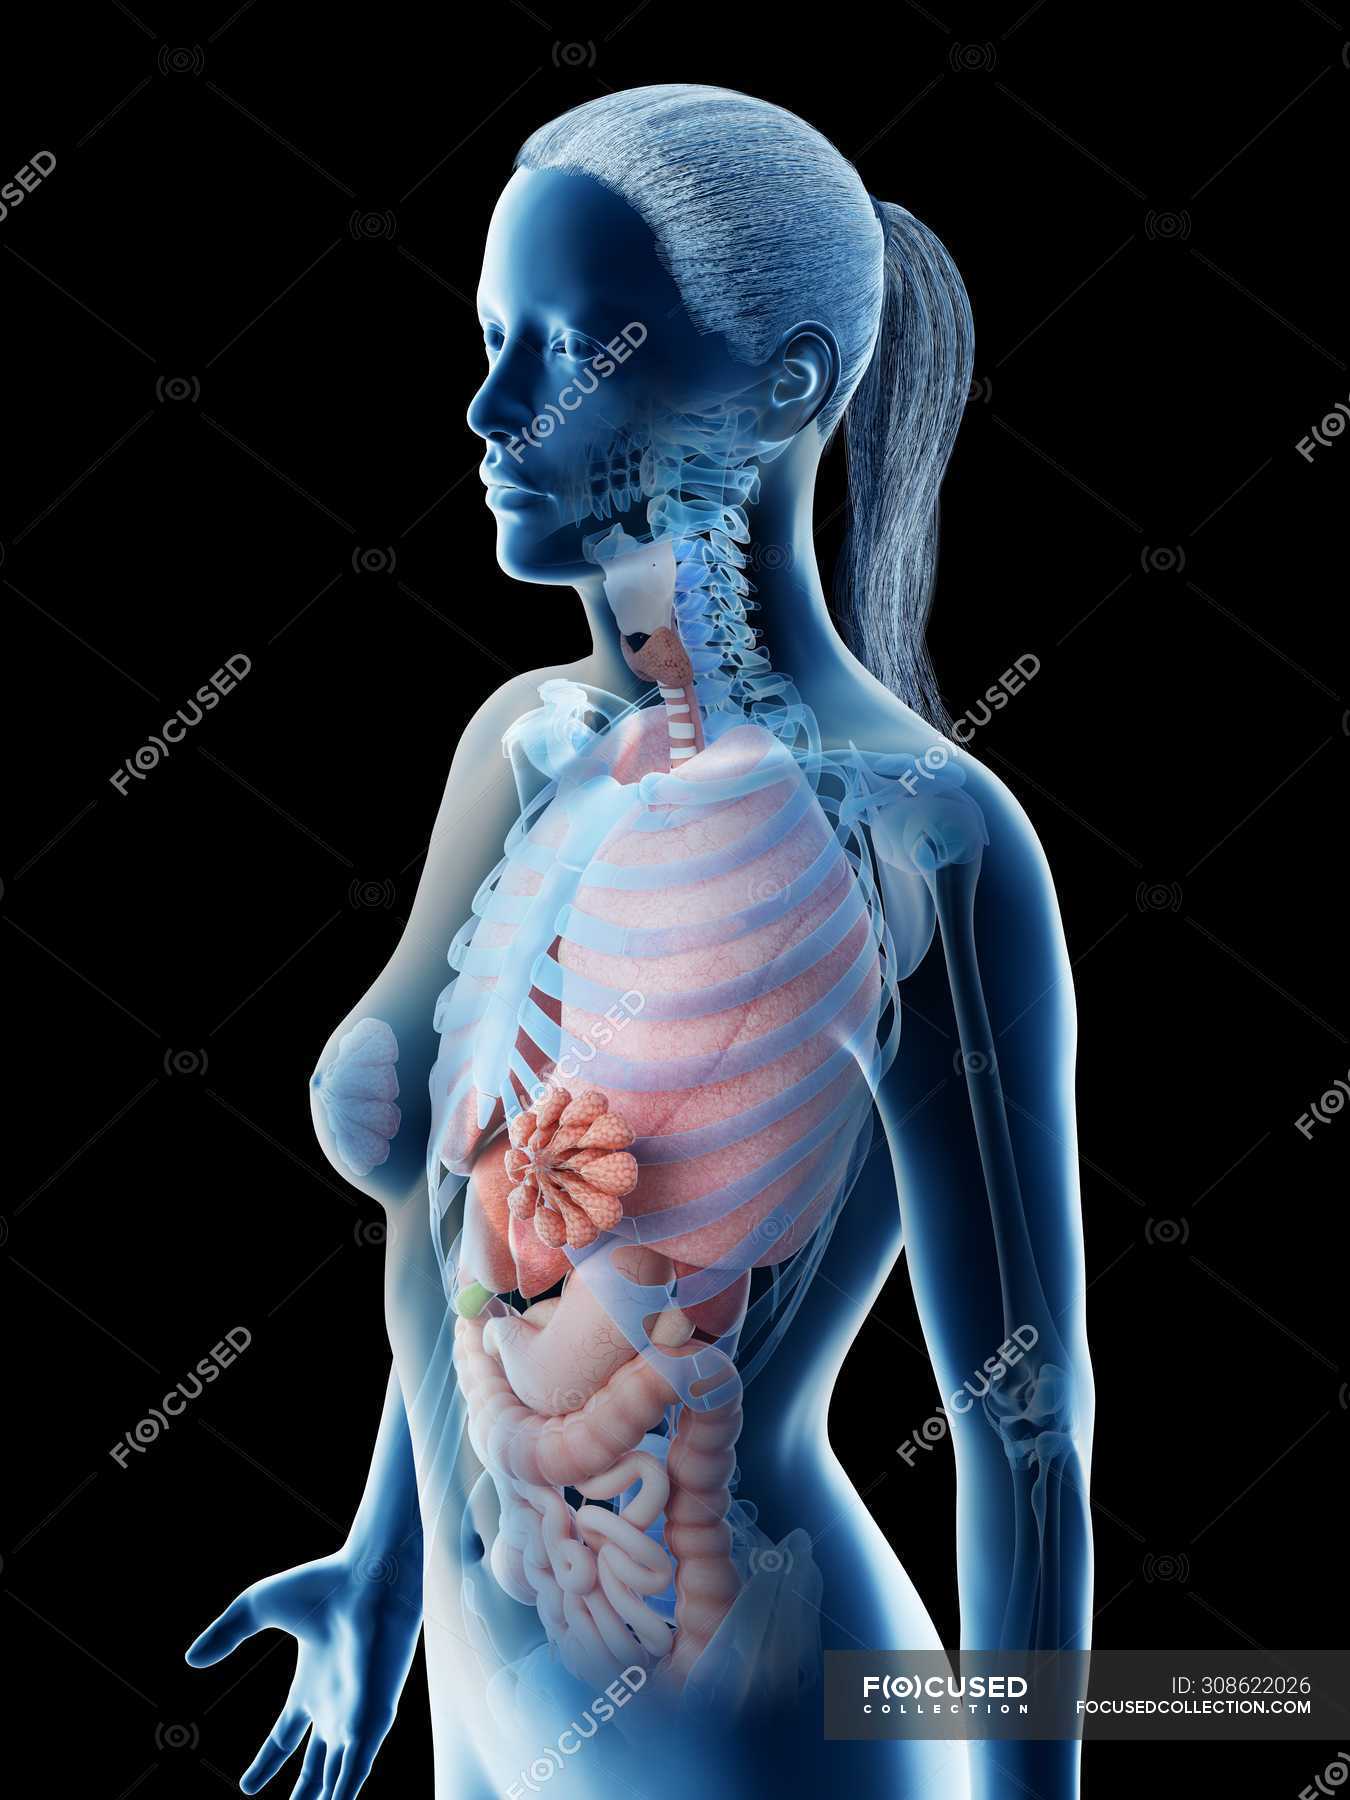 Human body model showing female anatomy with internal organs, digital